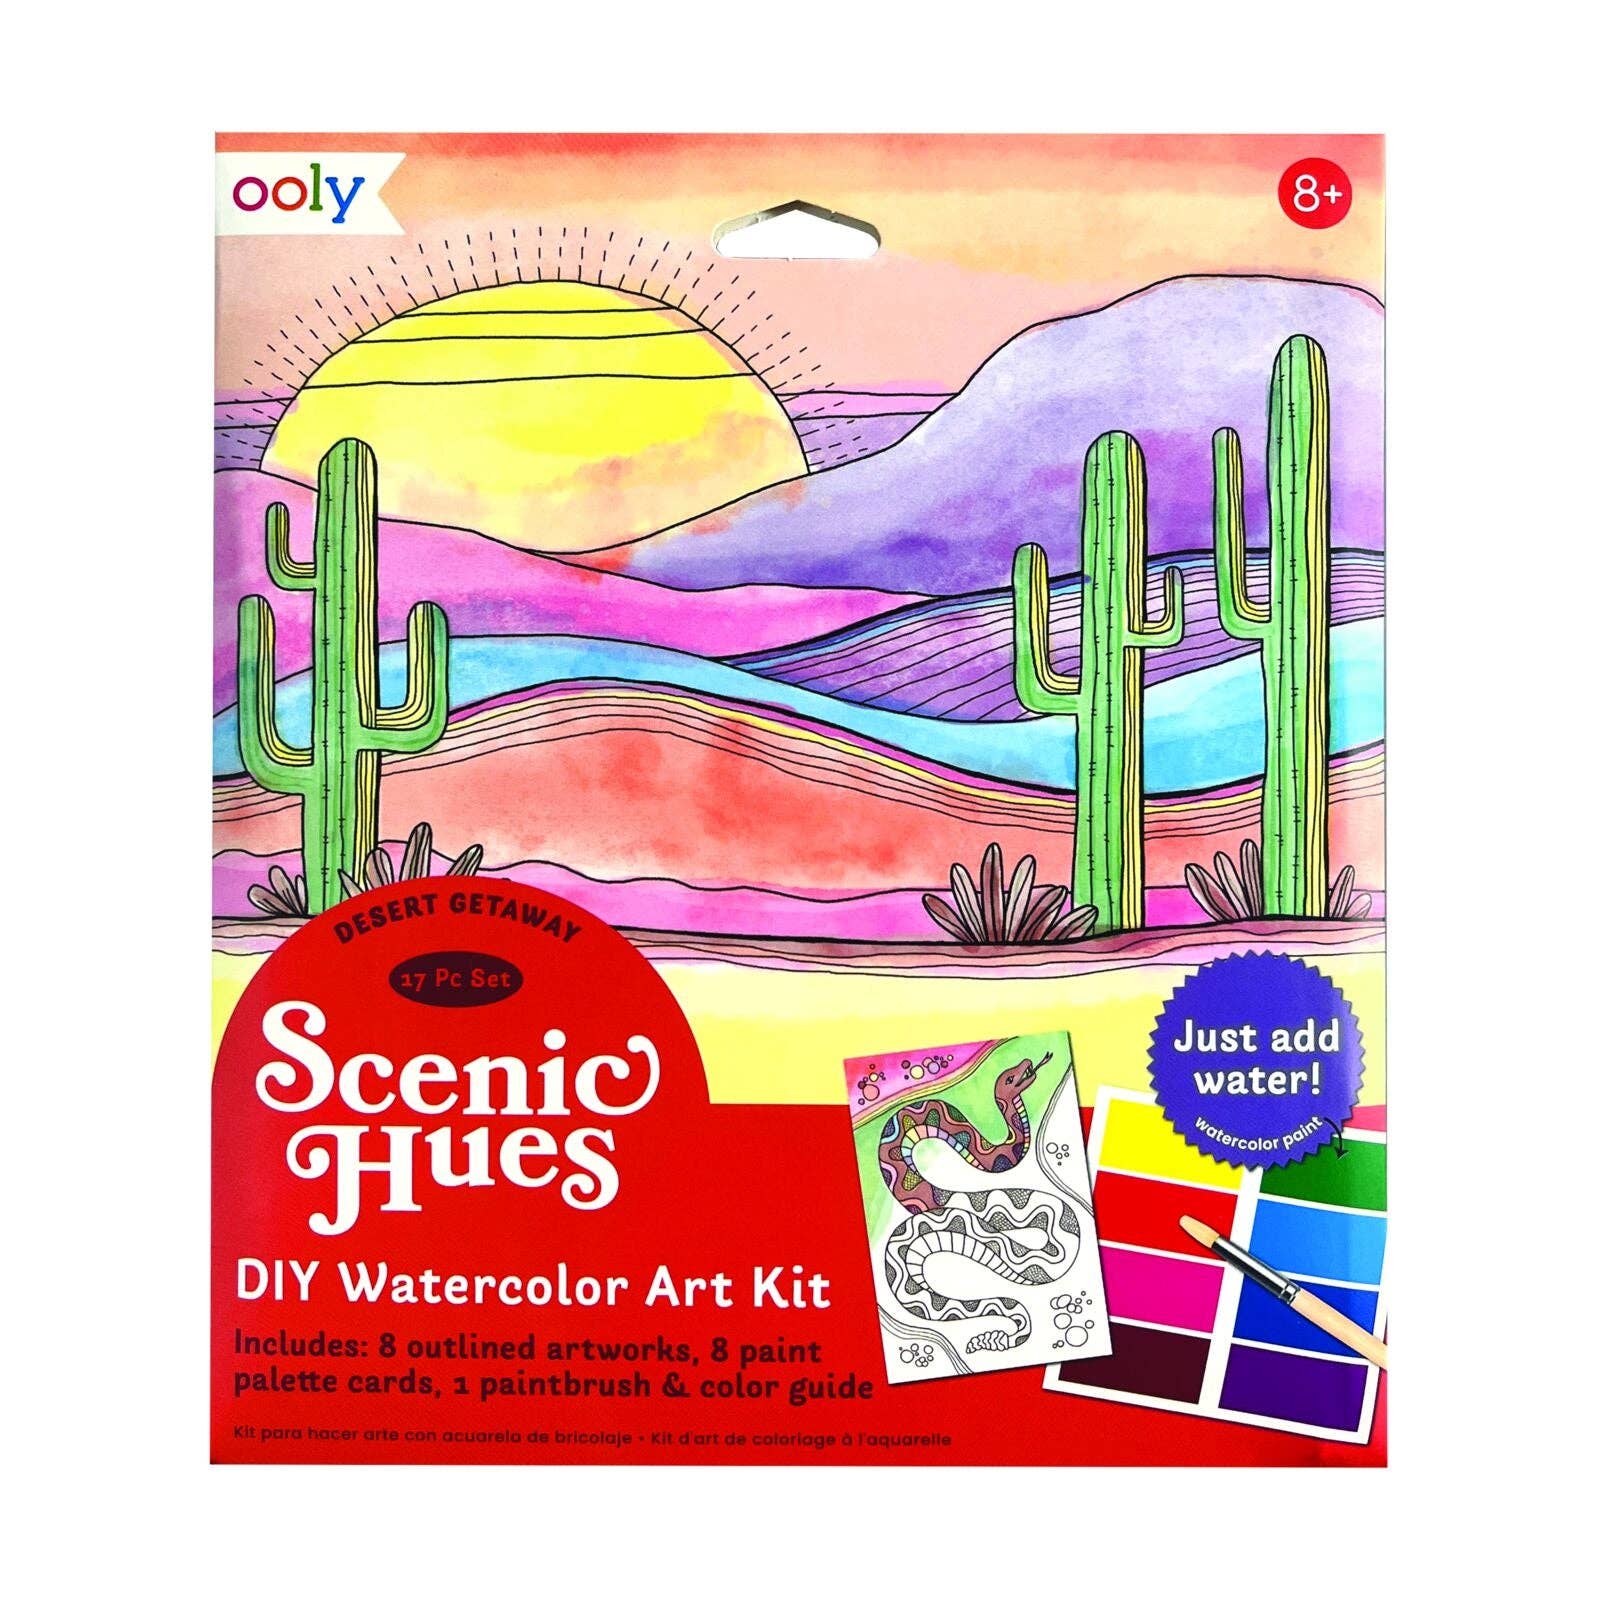 Desert Getaway Scenic Hues D.I.Y. Watercolor Kit